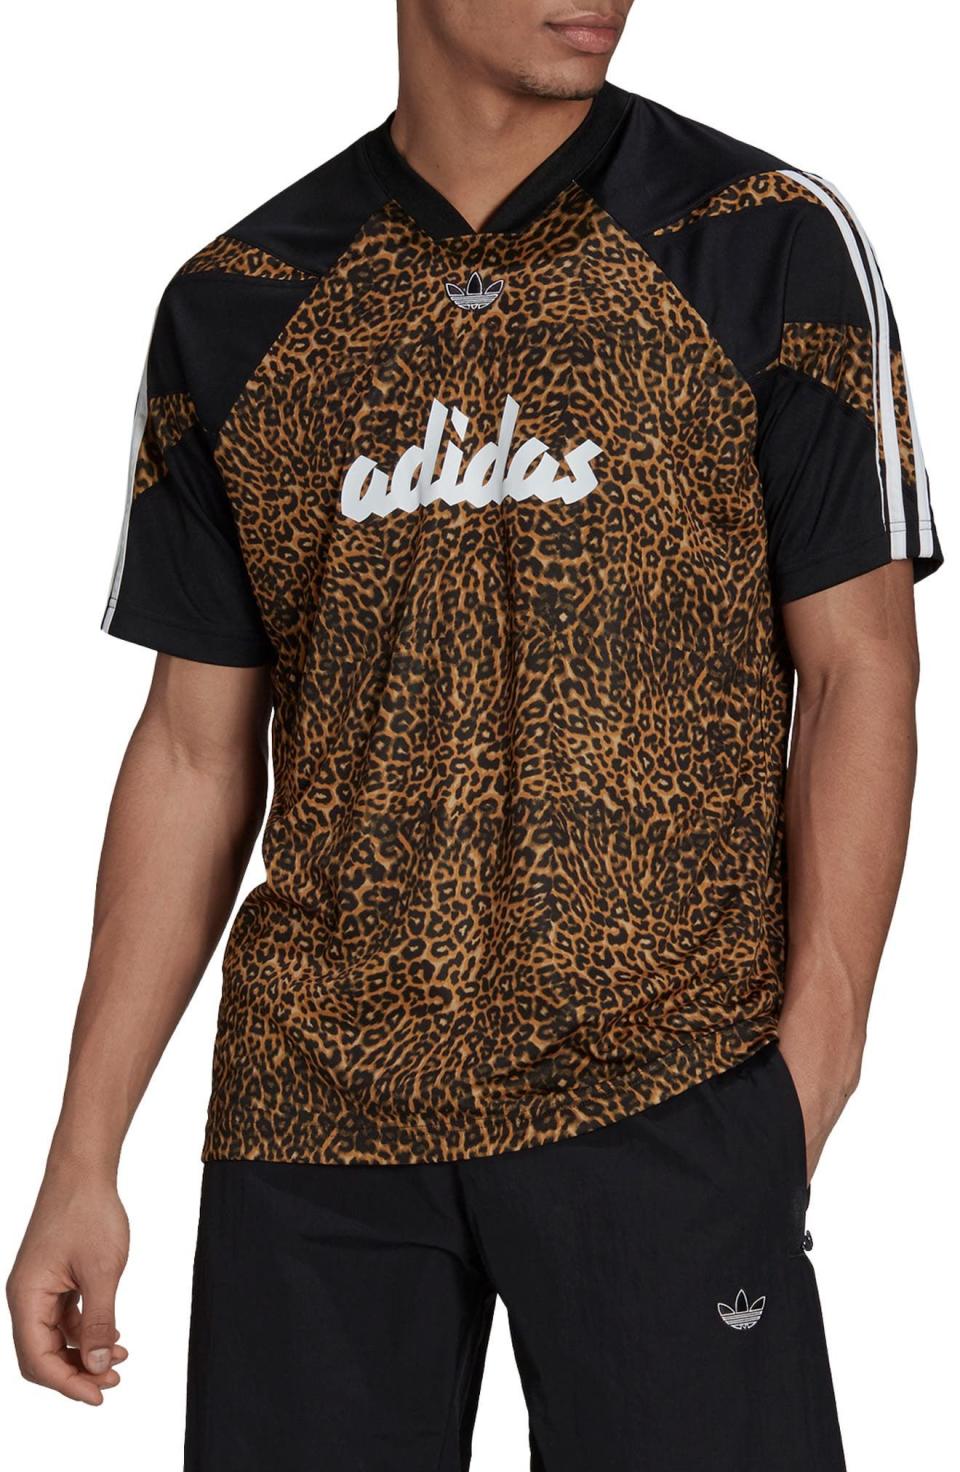 Leopard Print Soccer T-Shirt